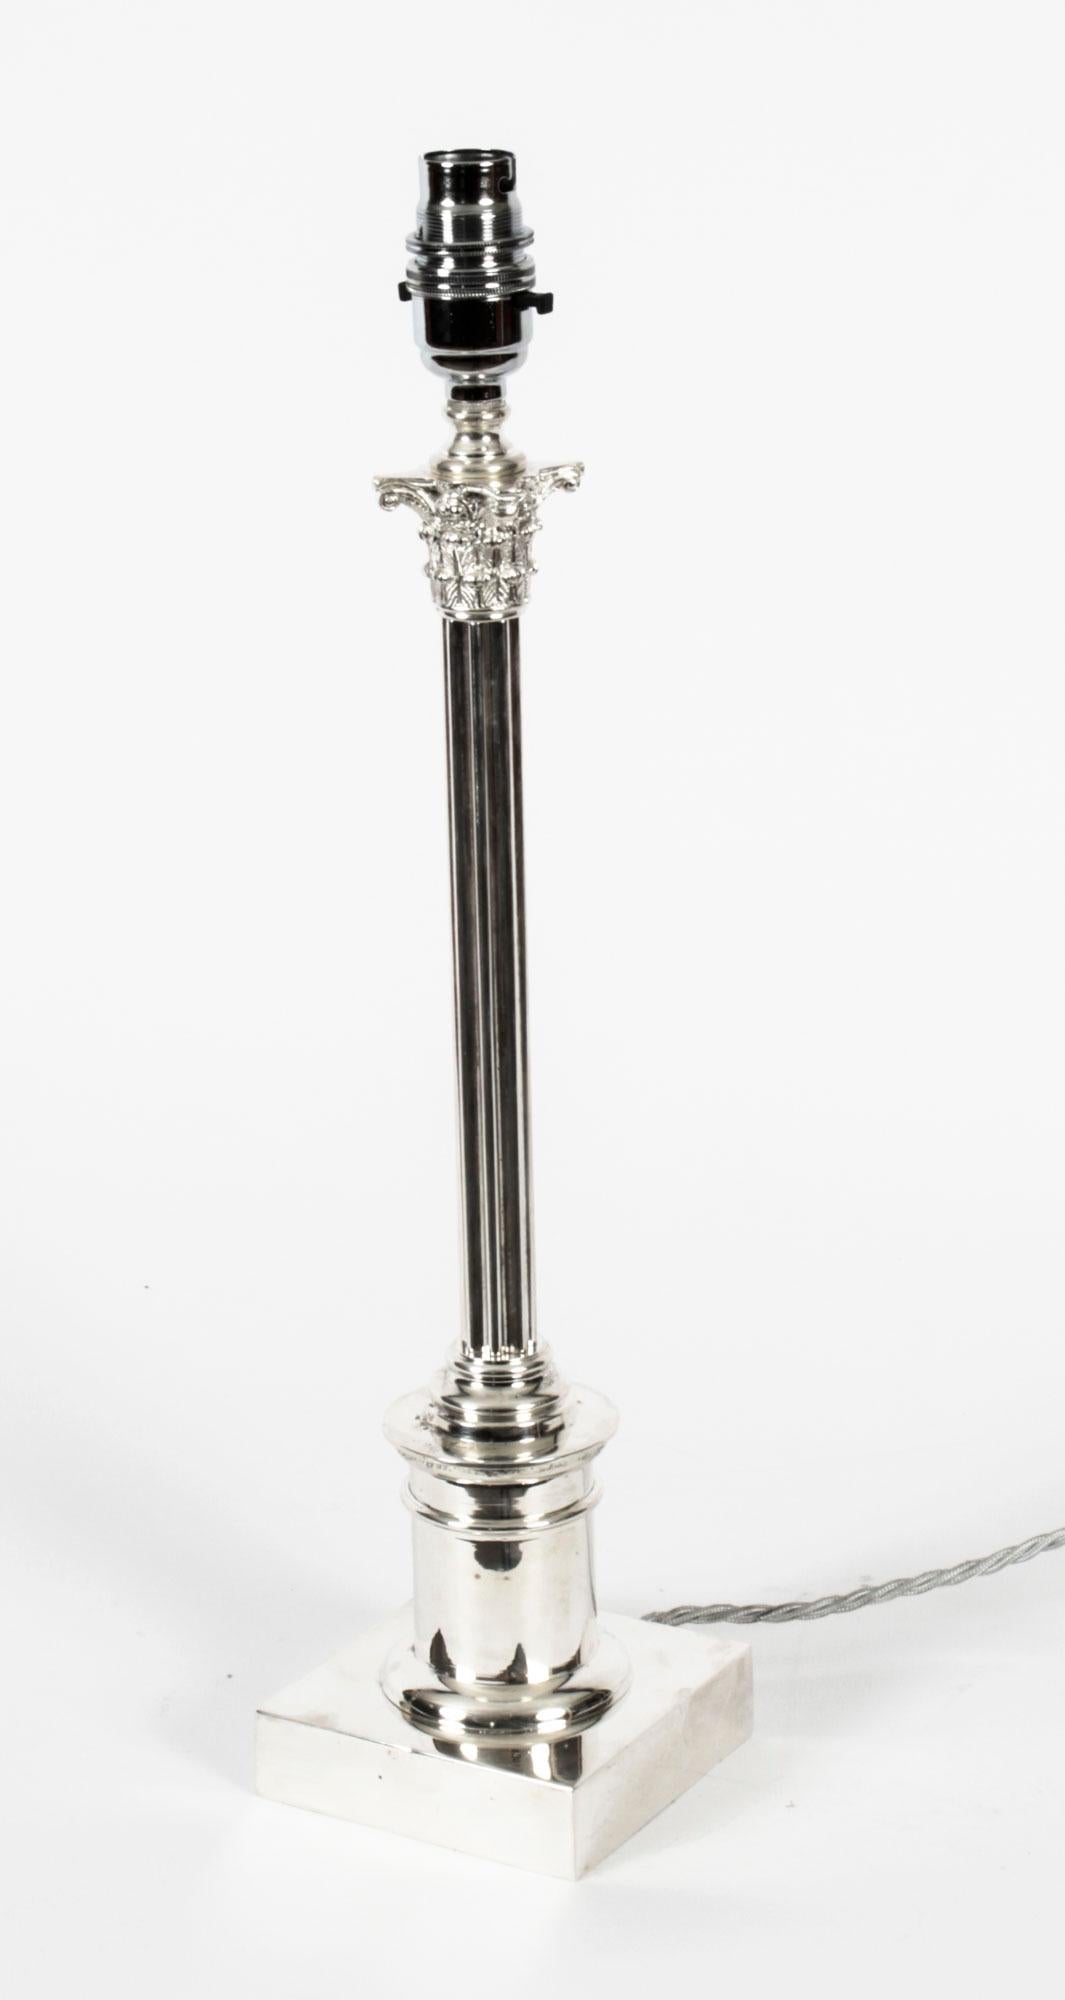 Dies ist eine beeindruckende antike edwardianische versilberte korinthische Säule Tischlampe, ca. 1910 in Datum.
 
Es zeigt ein klassisches korinthisches Kapitell, das mit Akanthusblättern und Anthemion verziert ist, mit einem dünnen,